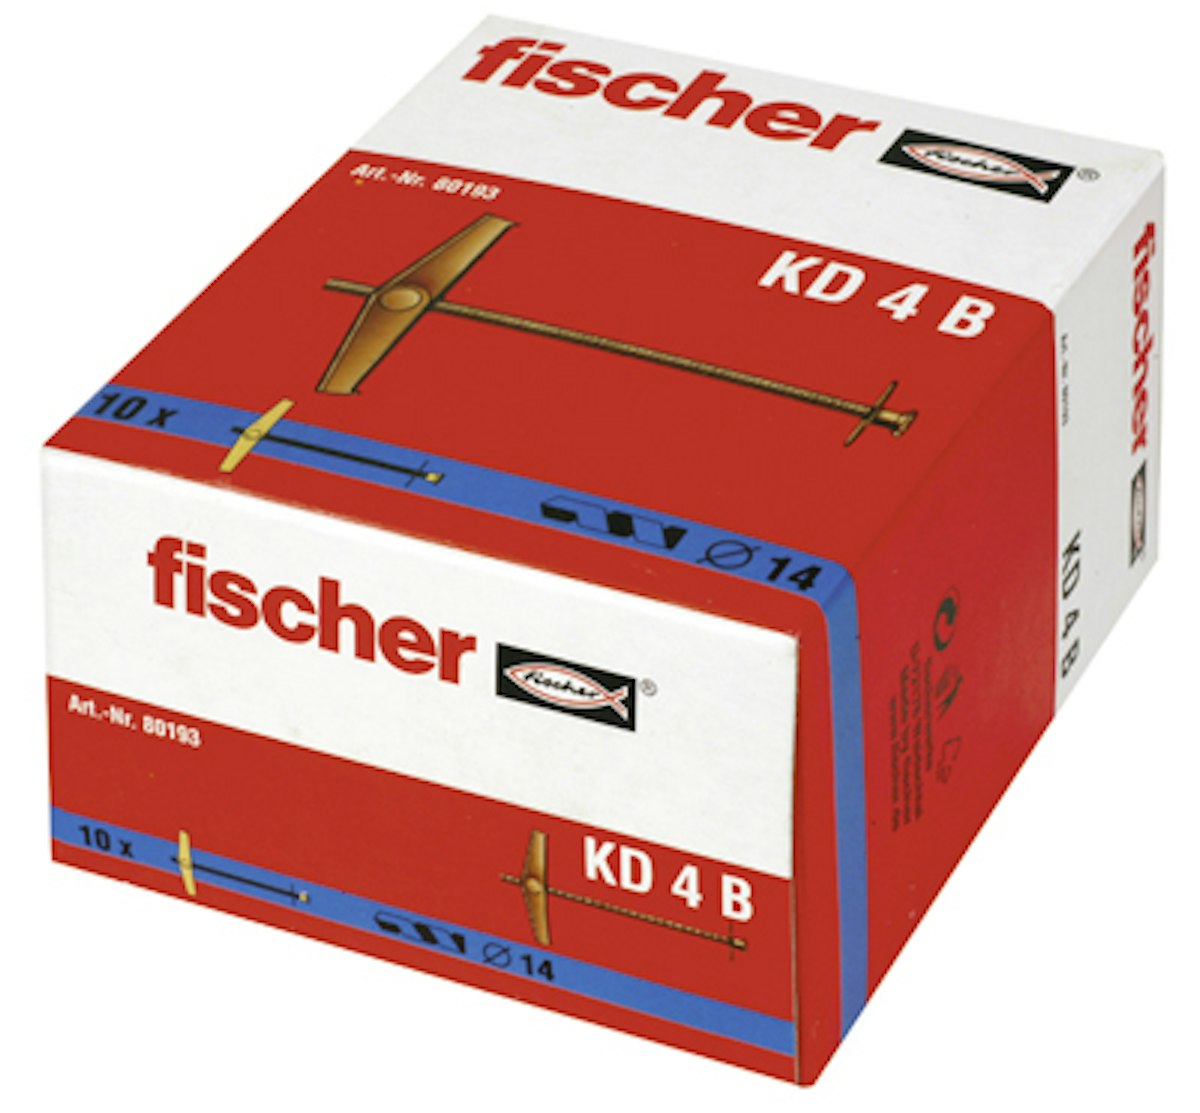 FISCHER Kippdübel KD 4 B (10  Stück) von fischerwerke GmbH & Co. KG